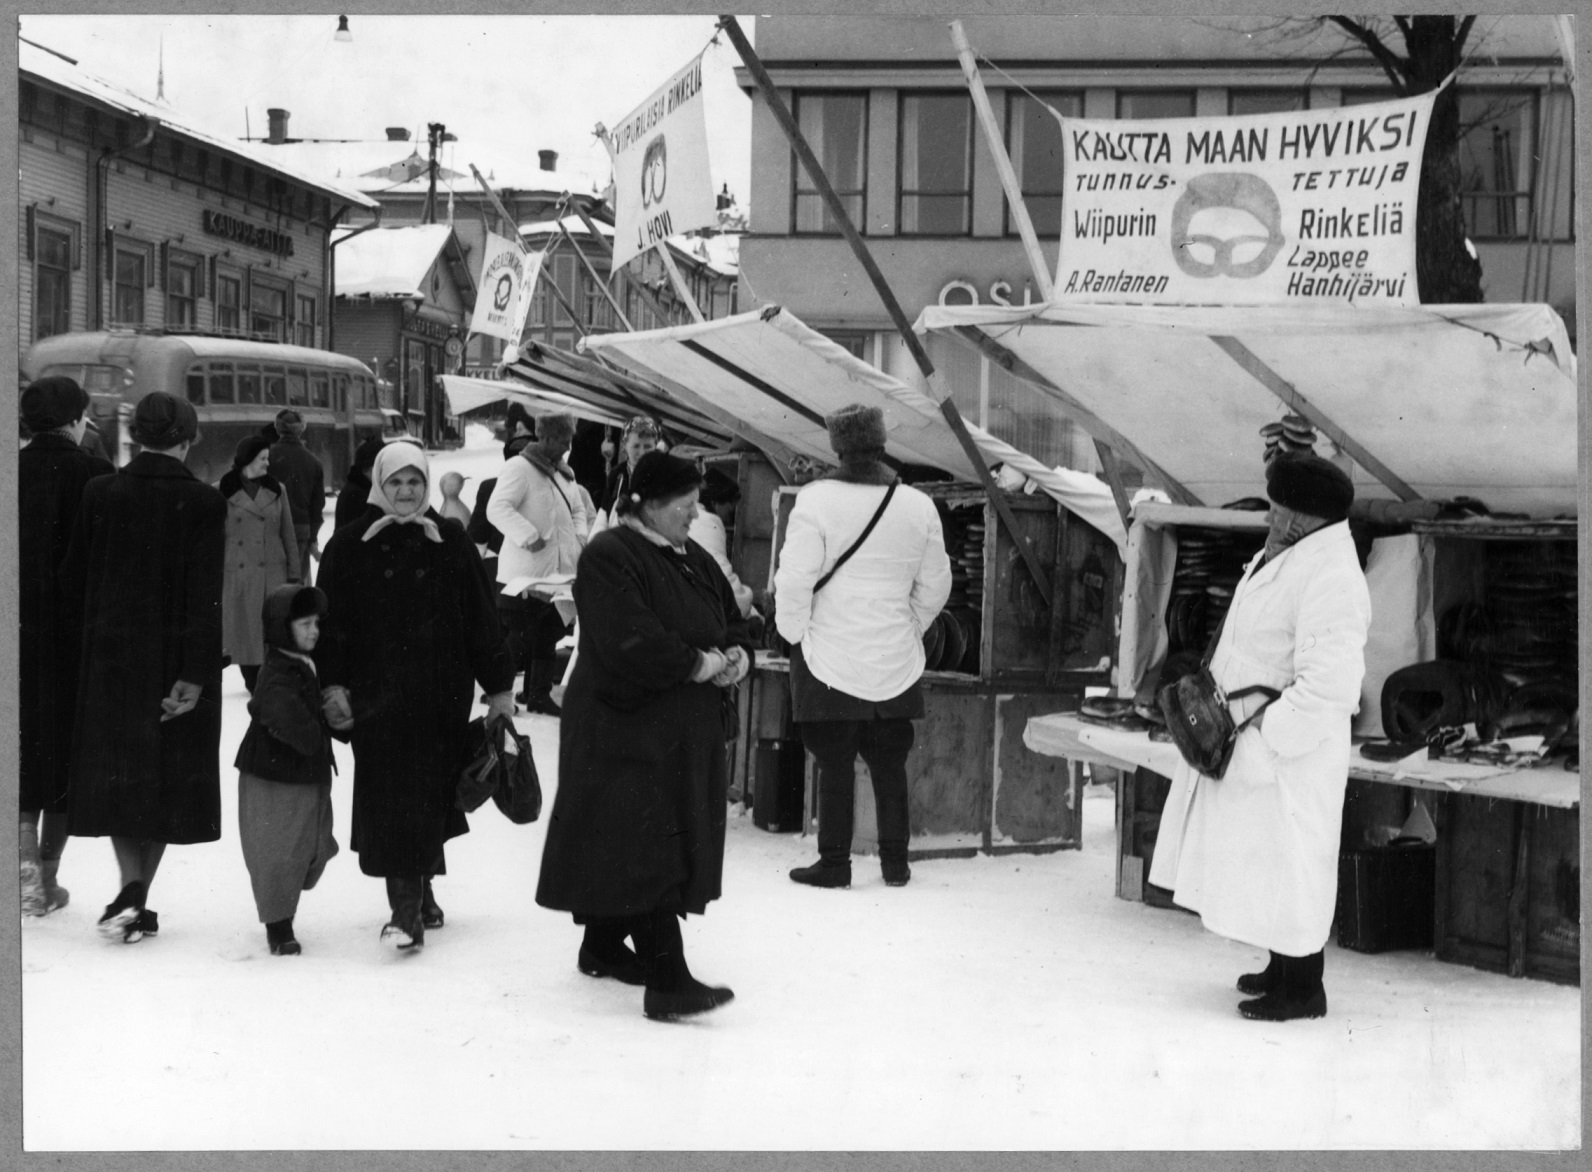 Tammikuun markkinat kauppatorilla. Viipurinrikelin myyjinä mm. A. Rantanen, Lappee Hanhijärvi ja J. Hovi. Vasemmalla Kauppa-Aitta-liike 1950-luku. January market in the market place